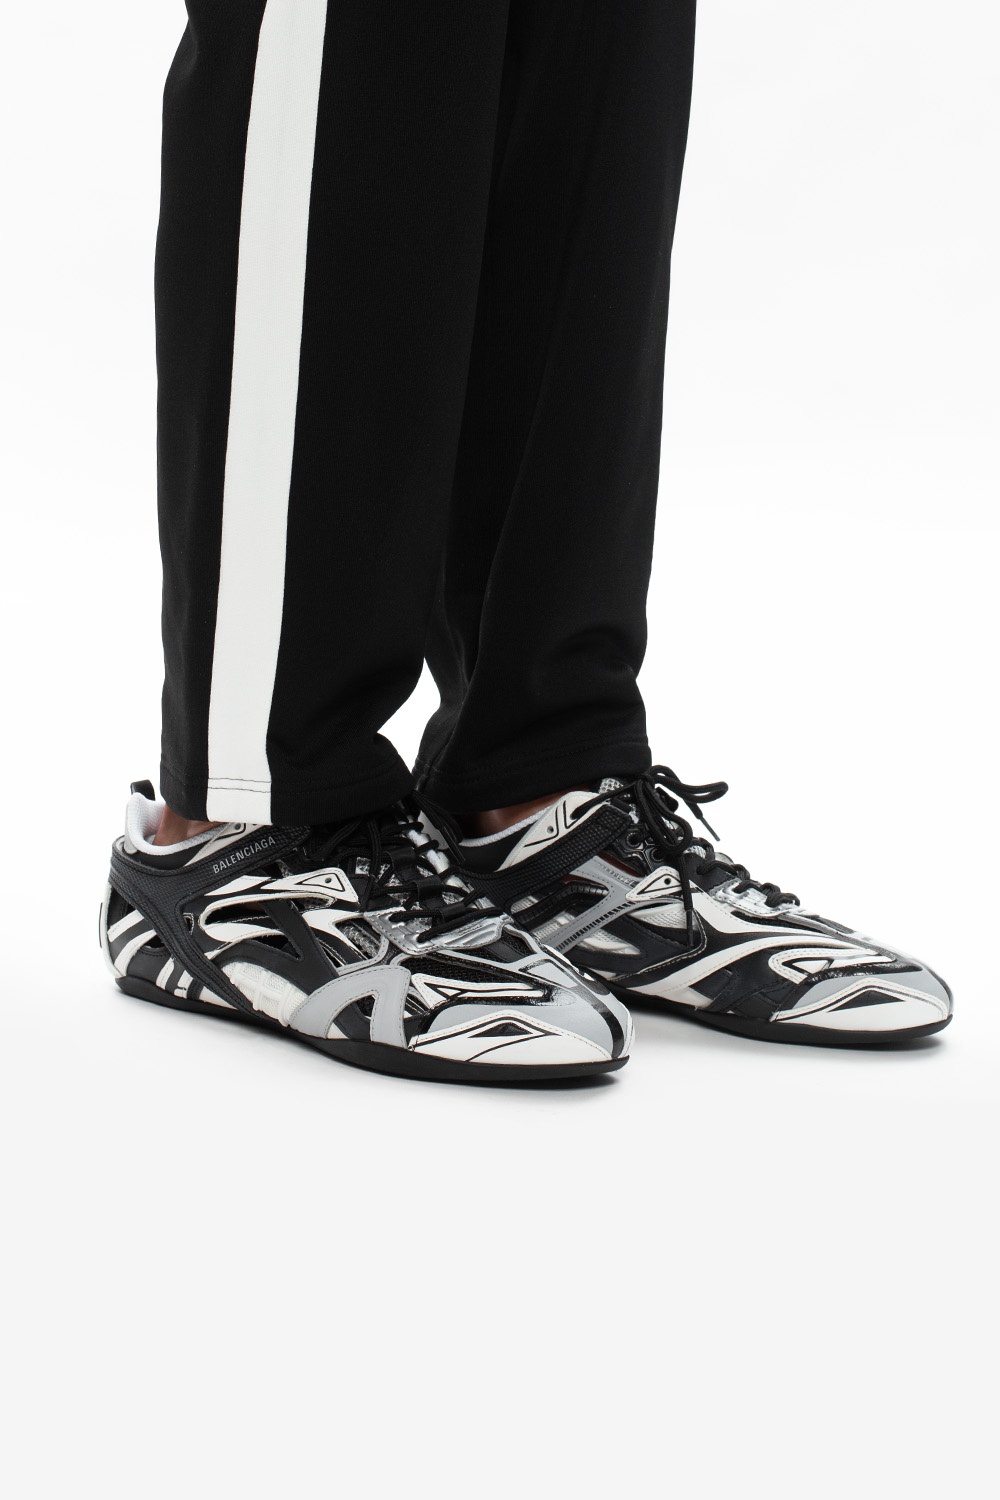 Balenciaga 'Drive' sneakers | Men's Shoes | IetpShops